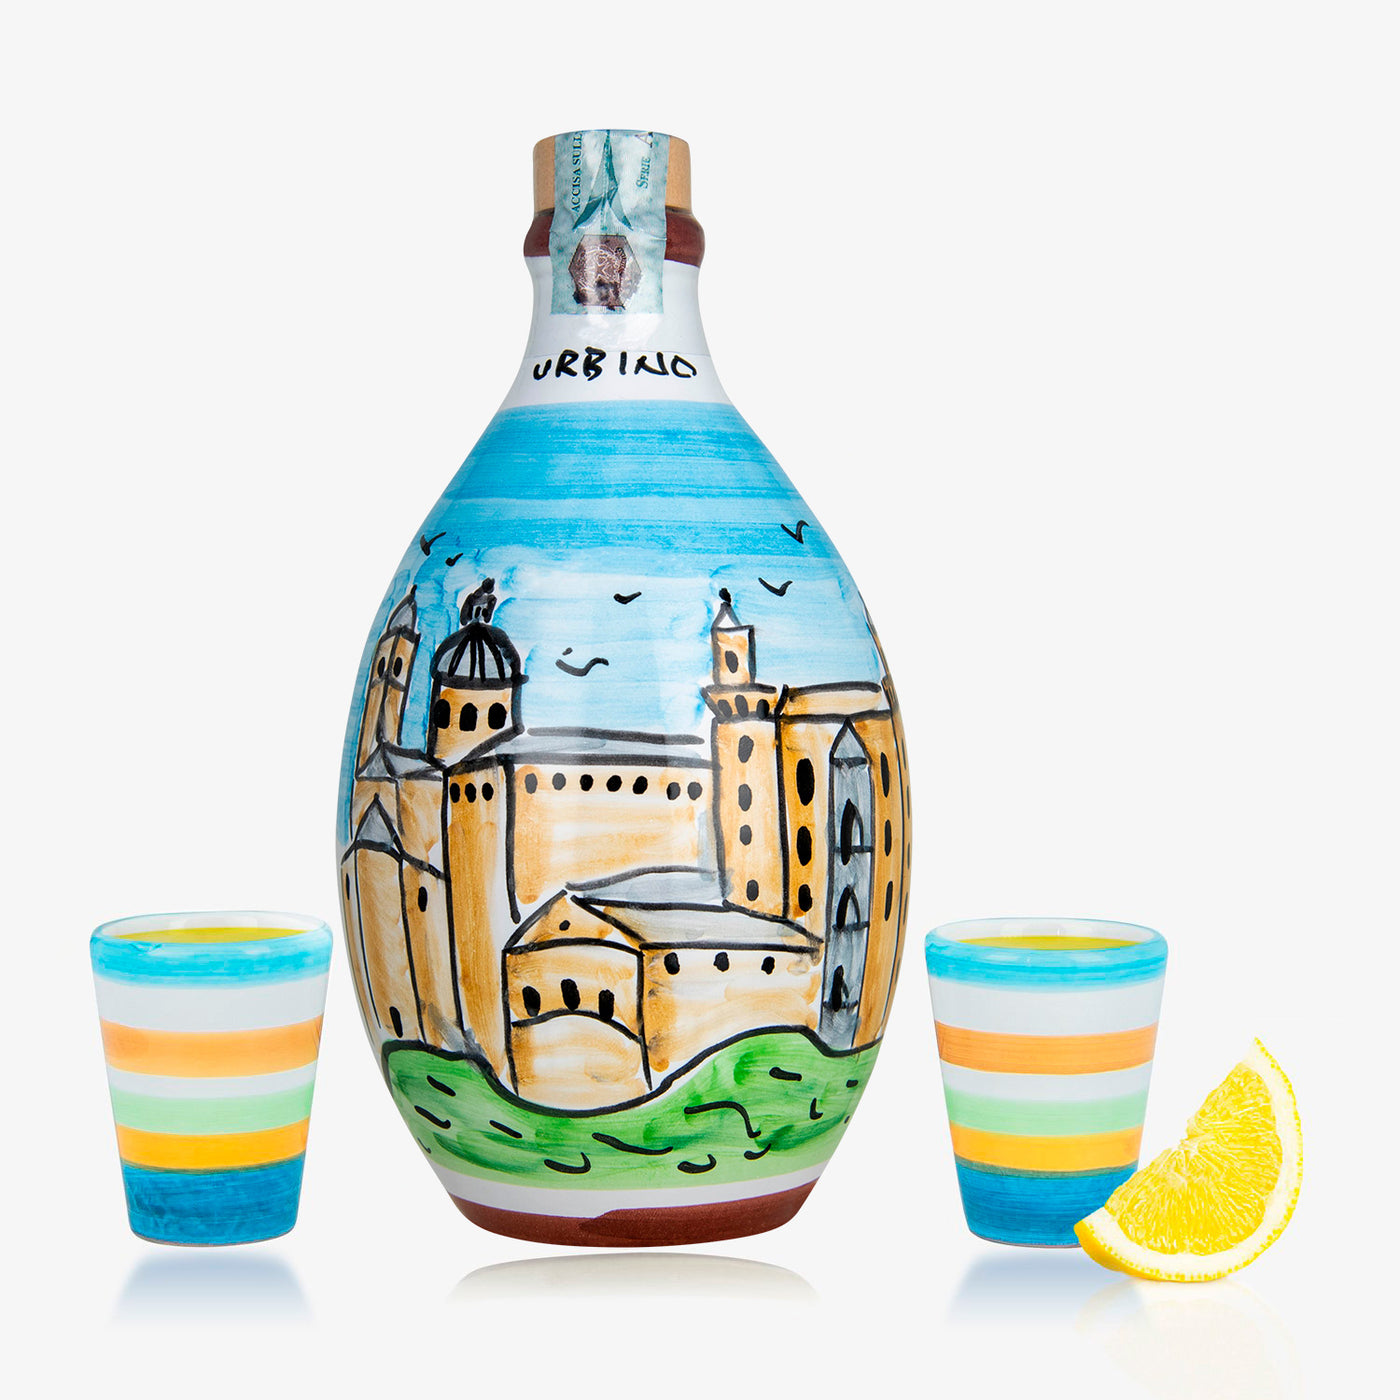 'Urbino' - Handmade Jar Limoncello and two Glasses